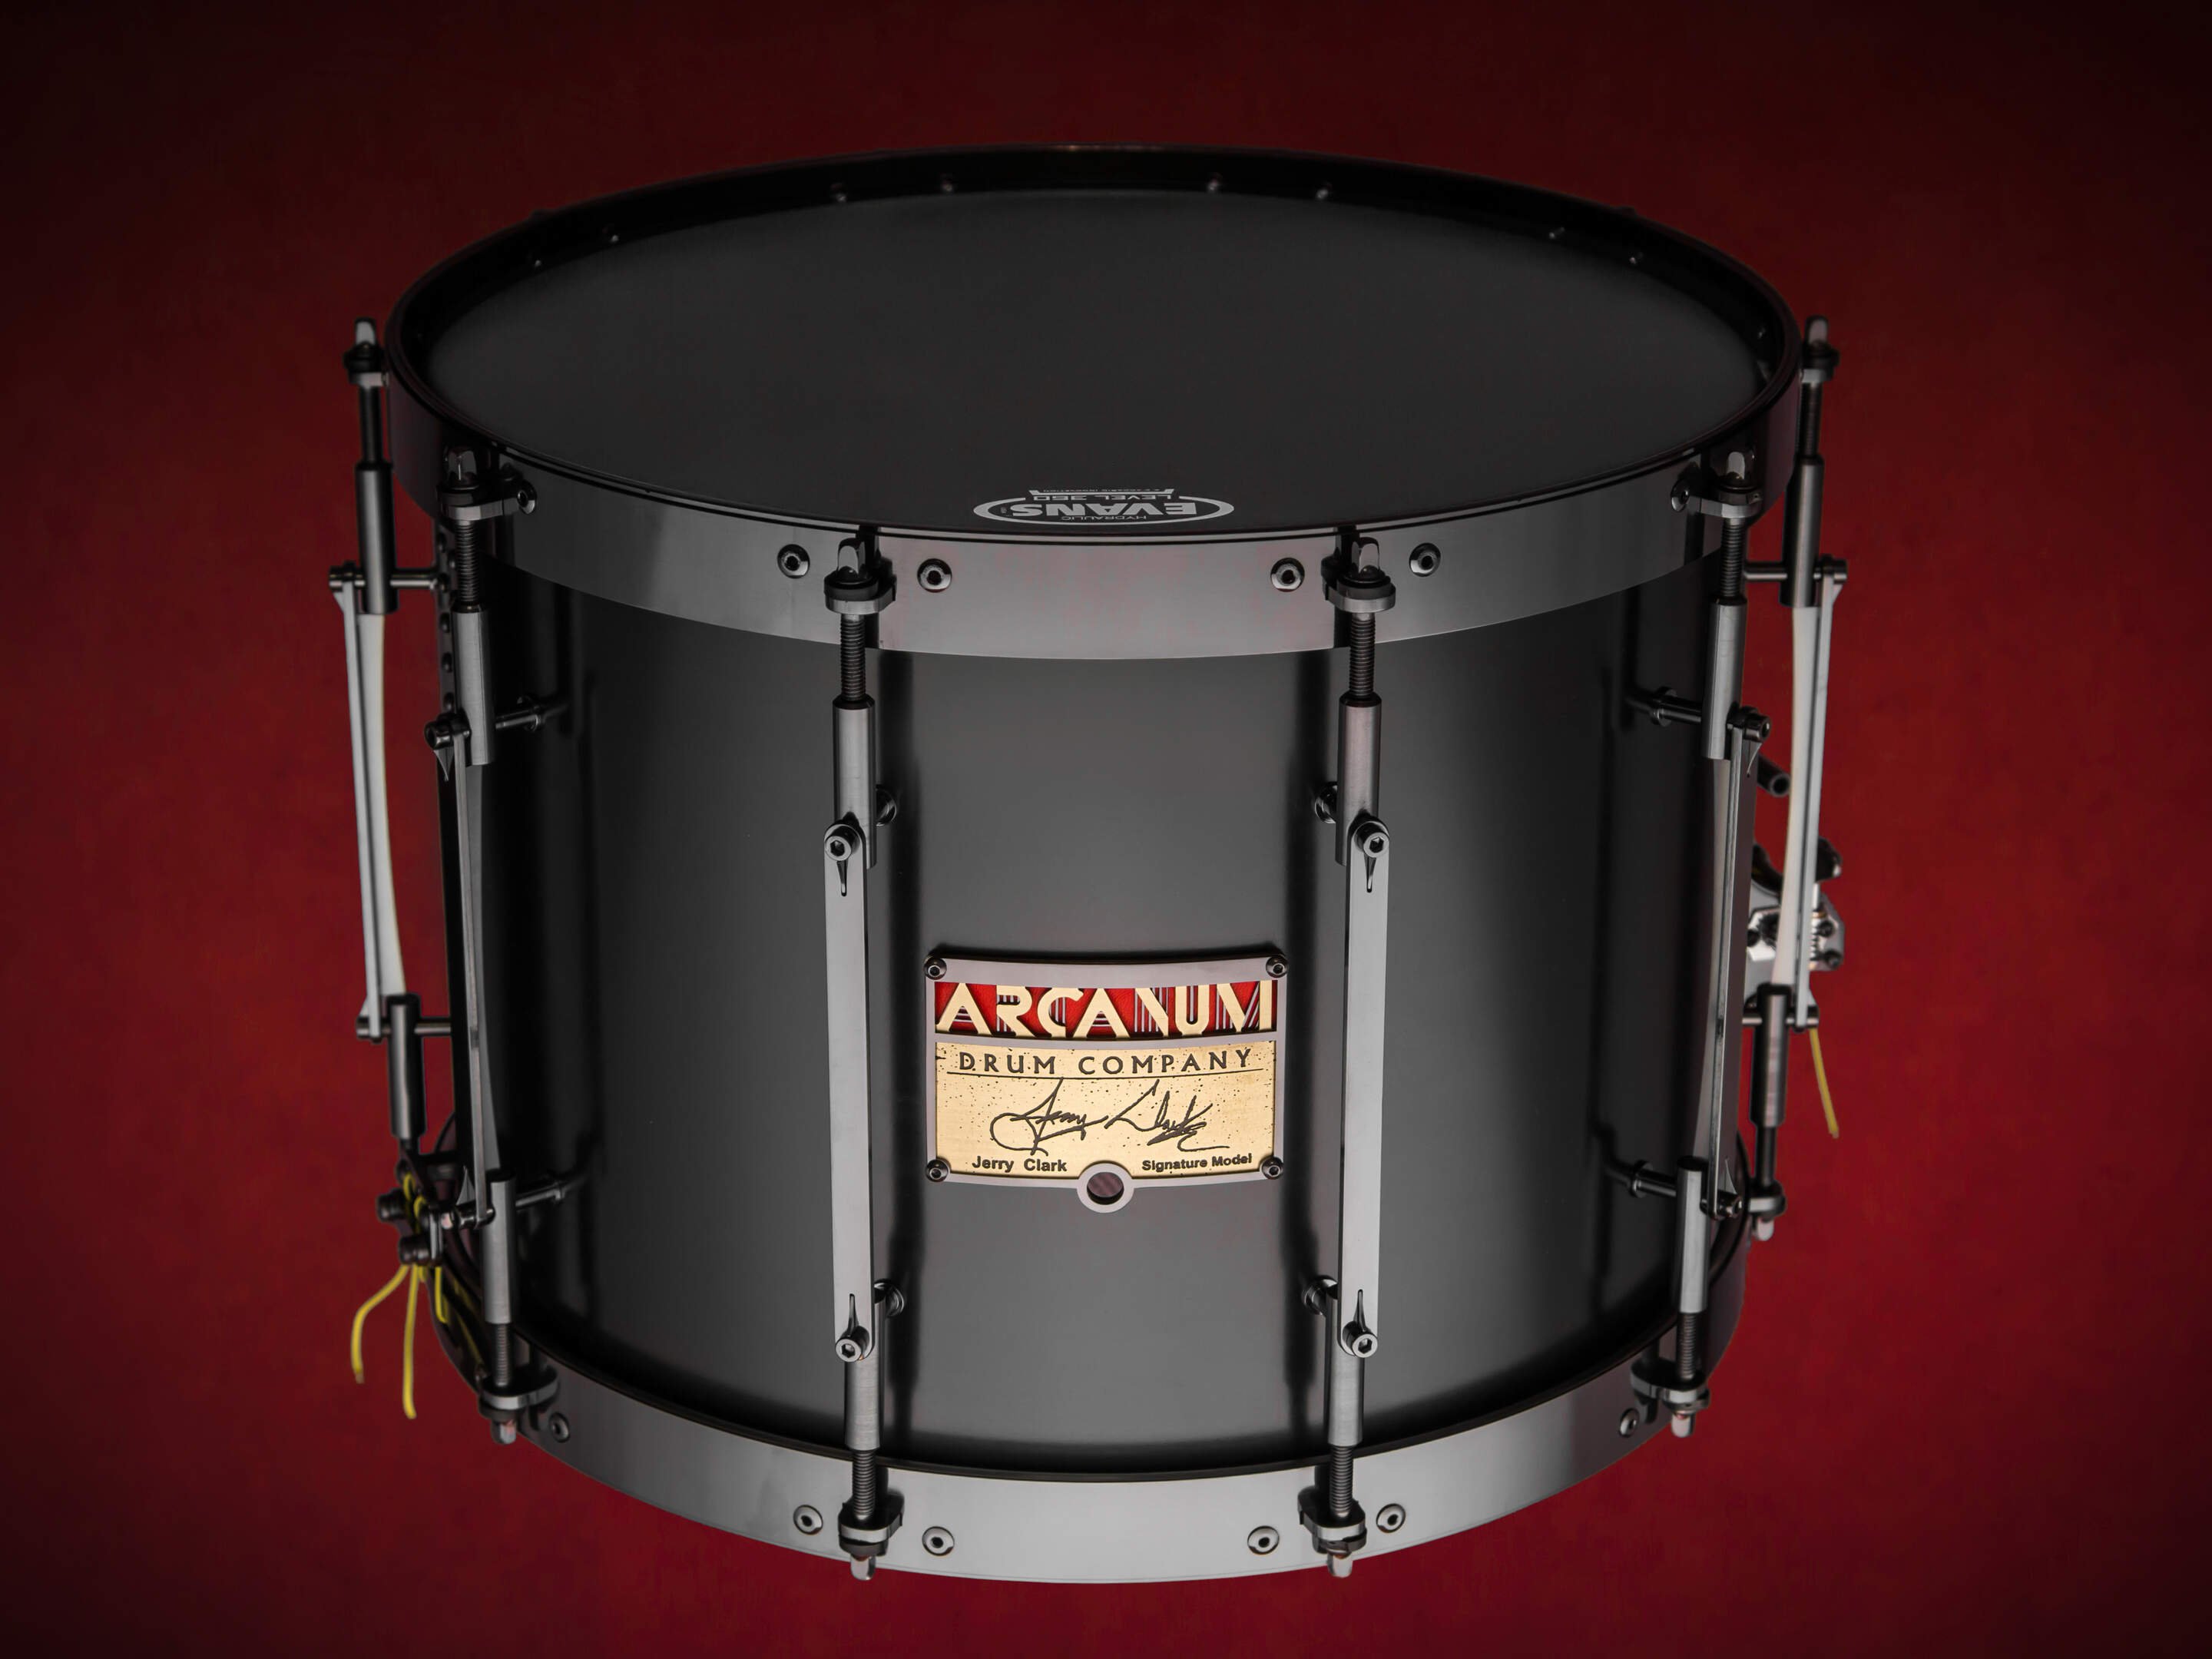 Arcanum Drum Company